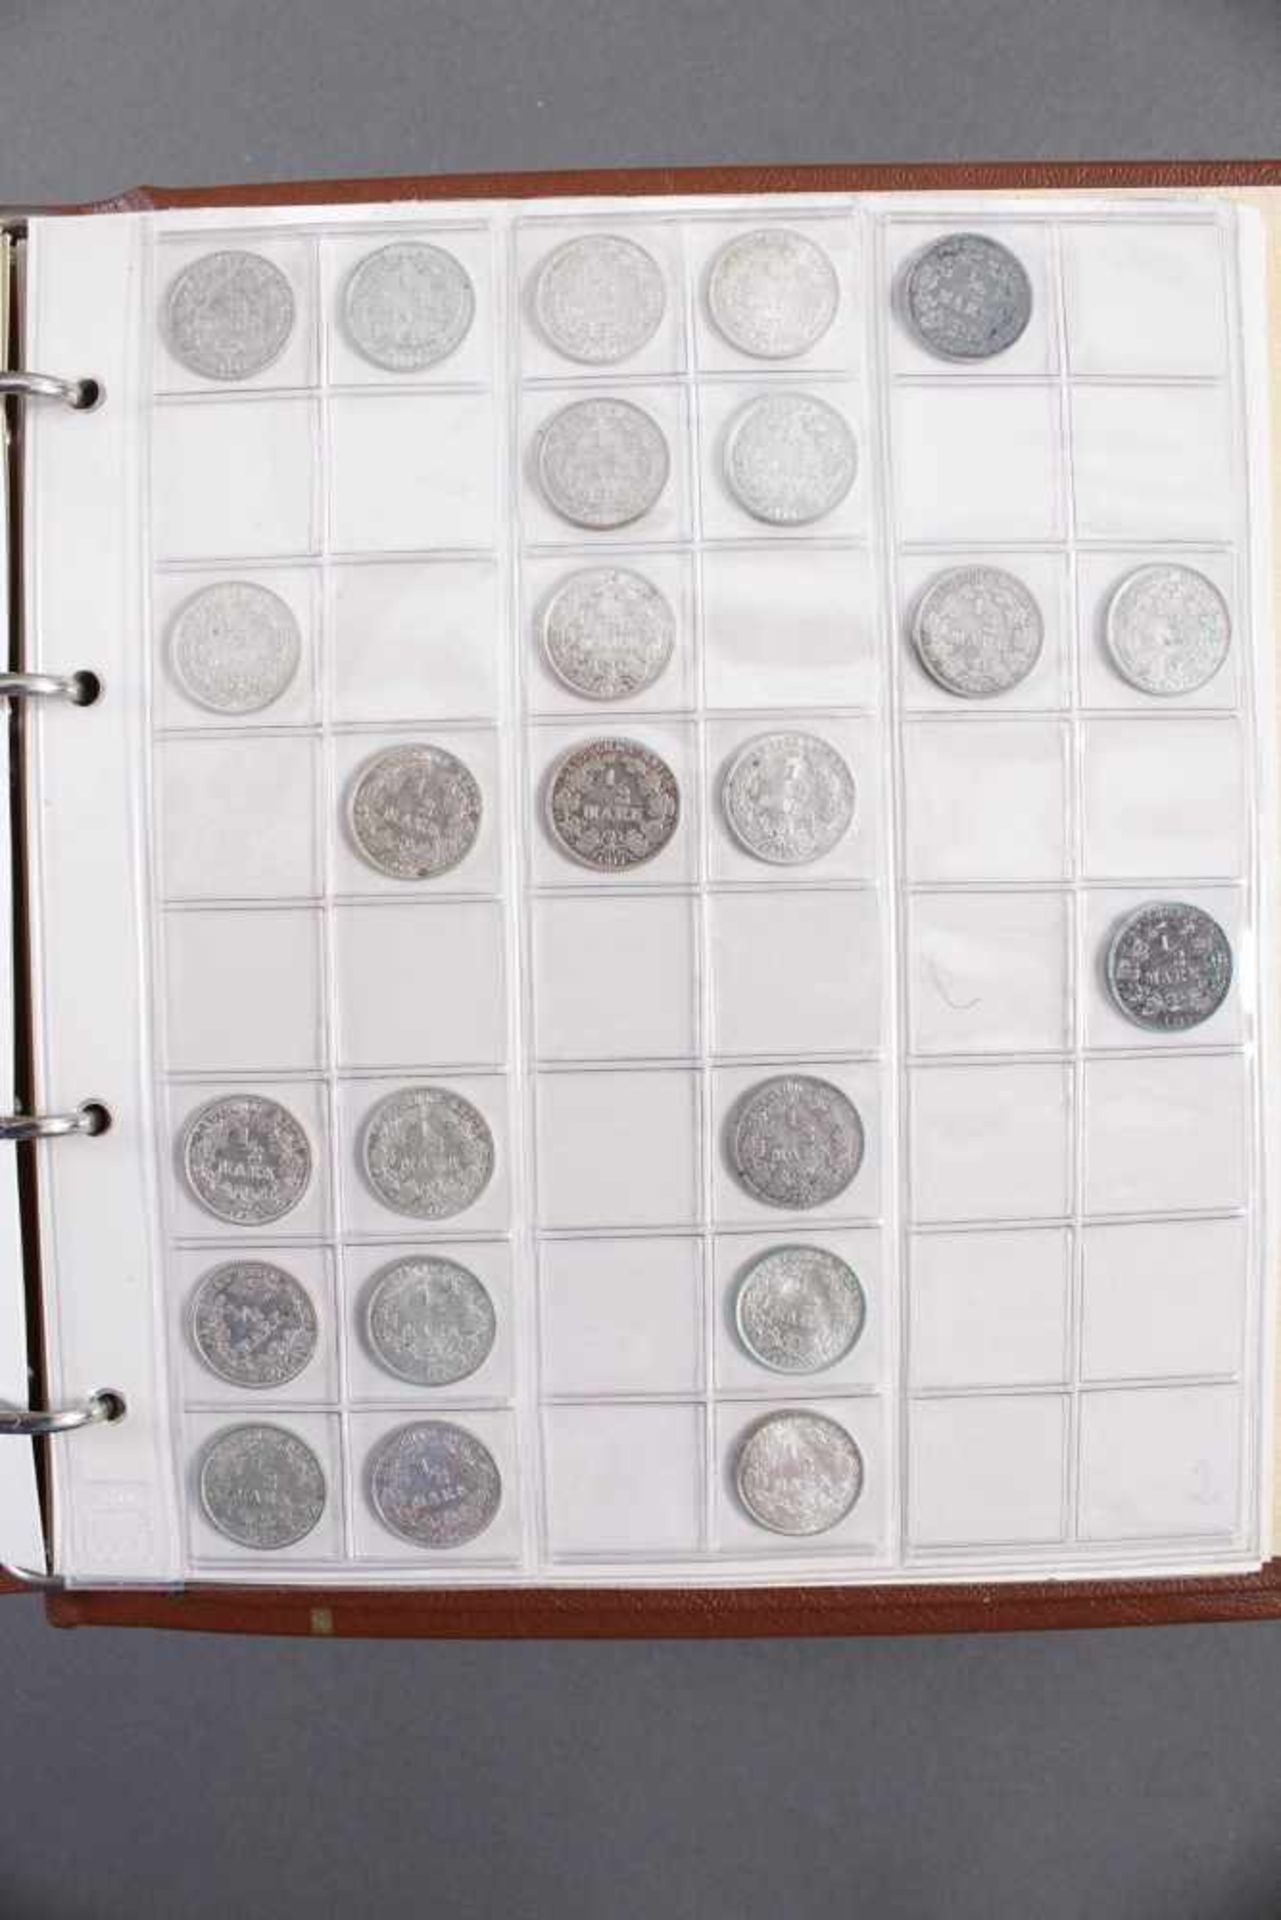 Sammlung Kleinmünzen Deutsches Reich3 gut gefüllte Ordner mit Münze von 1 Reichspfennig bis 50 - Image 2 of 2